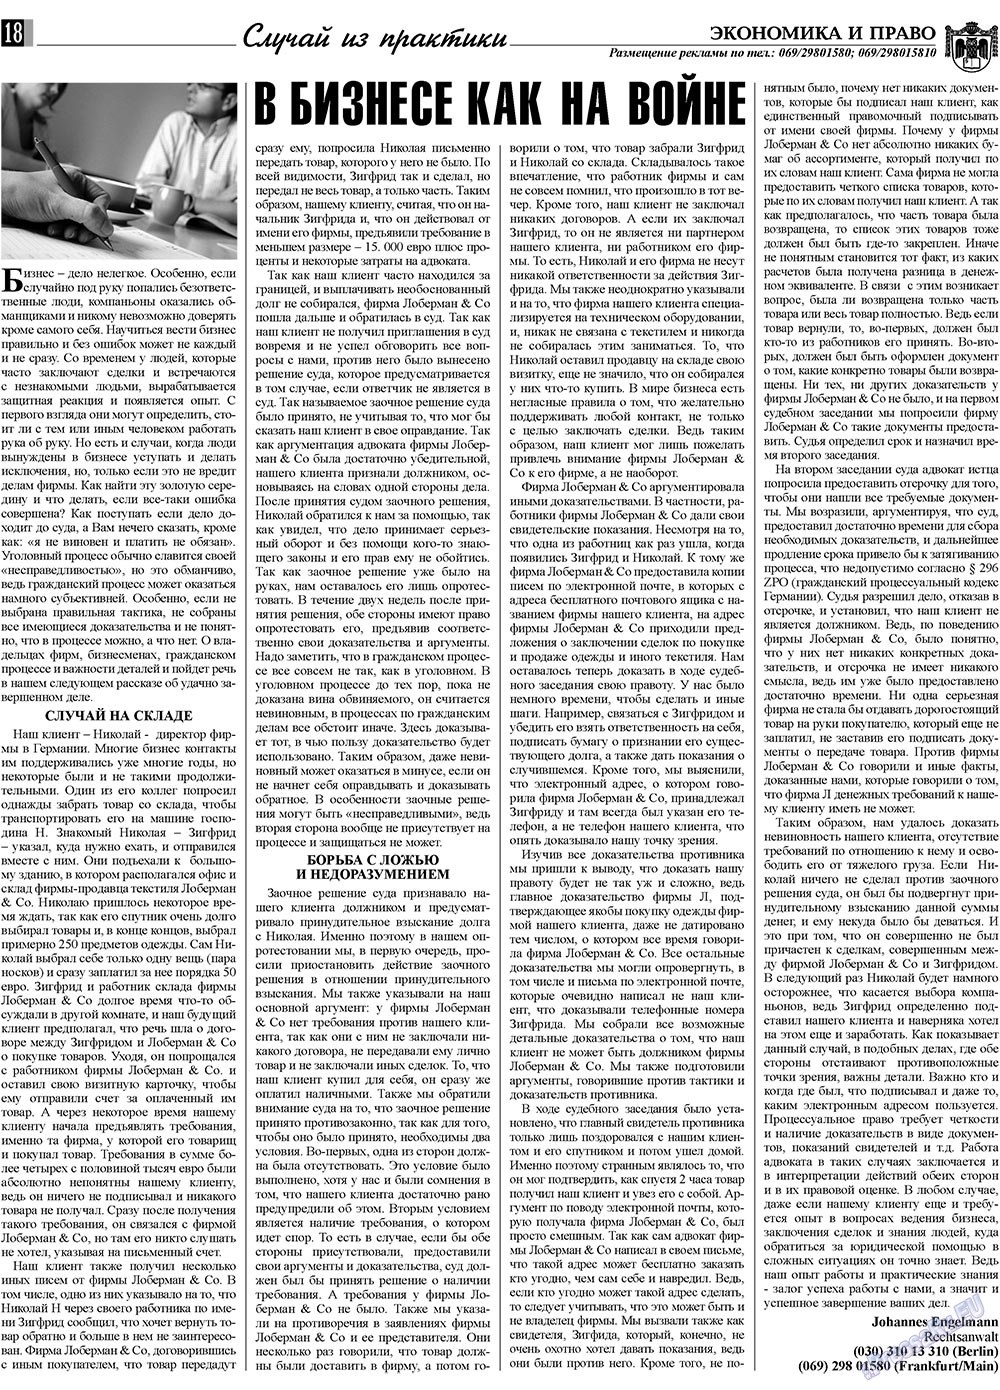 Экономика и право, газета. 2009 №5 стр.18